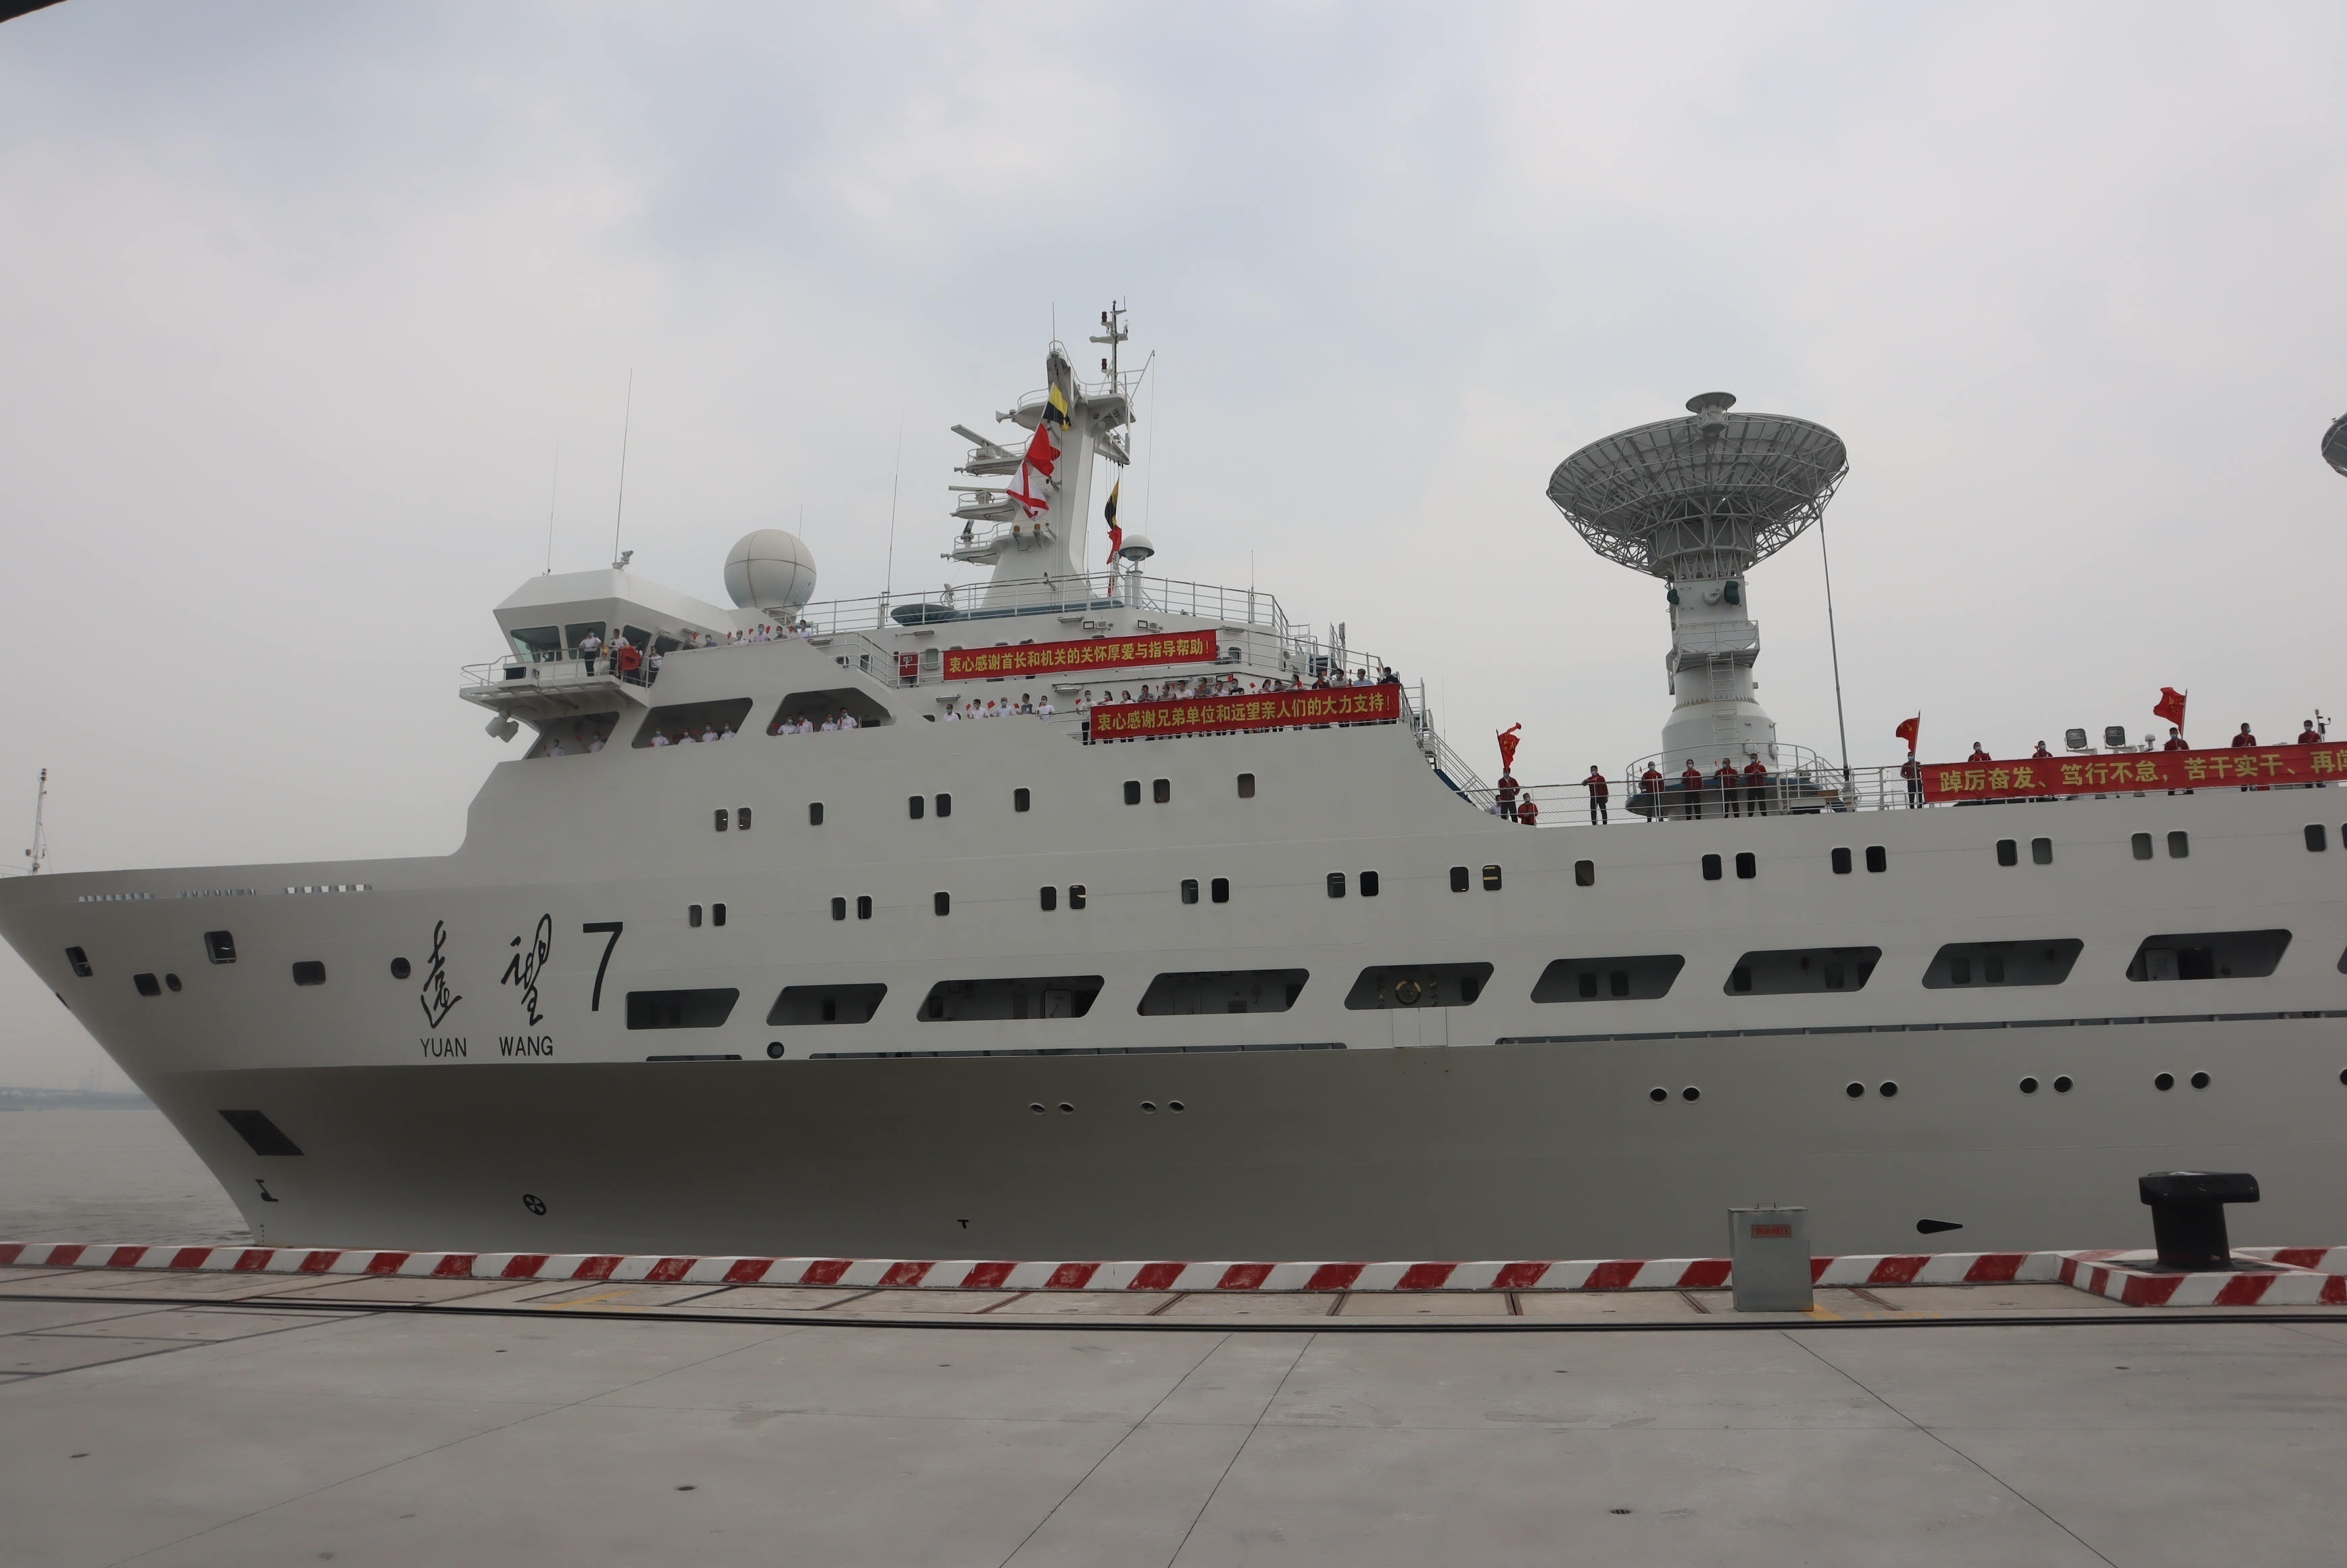 远望7号远洋测量船解缆起航开启下半年高密度任务